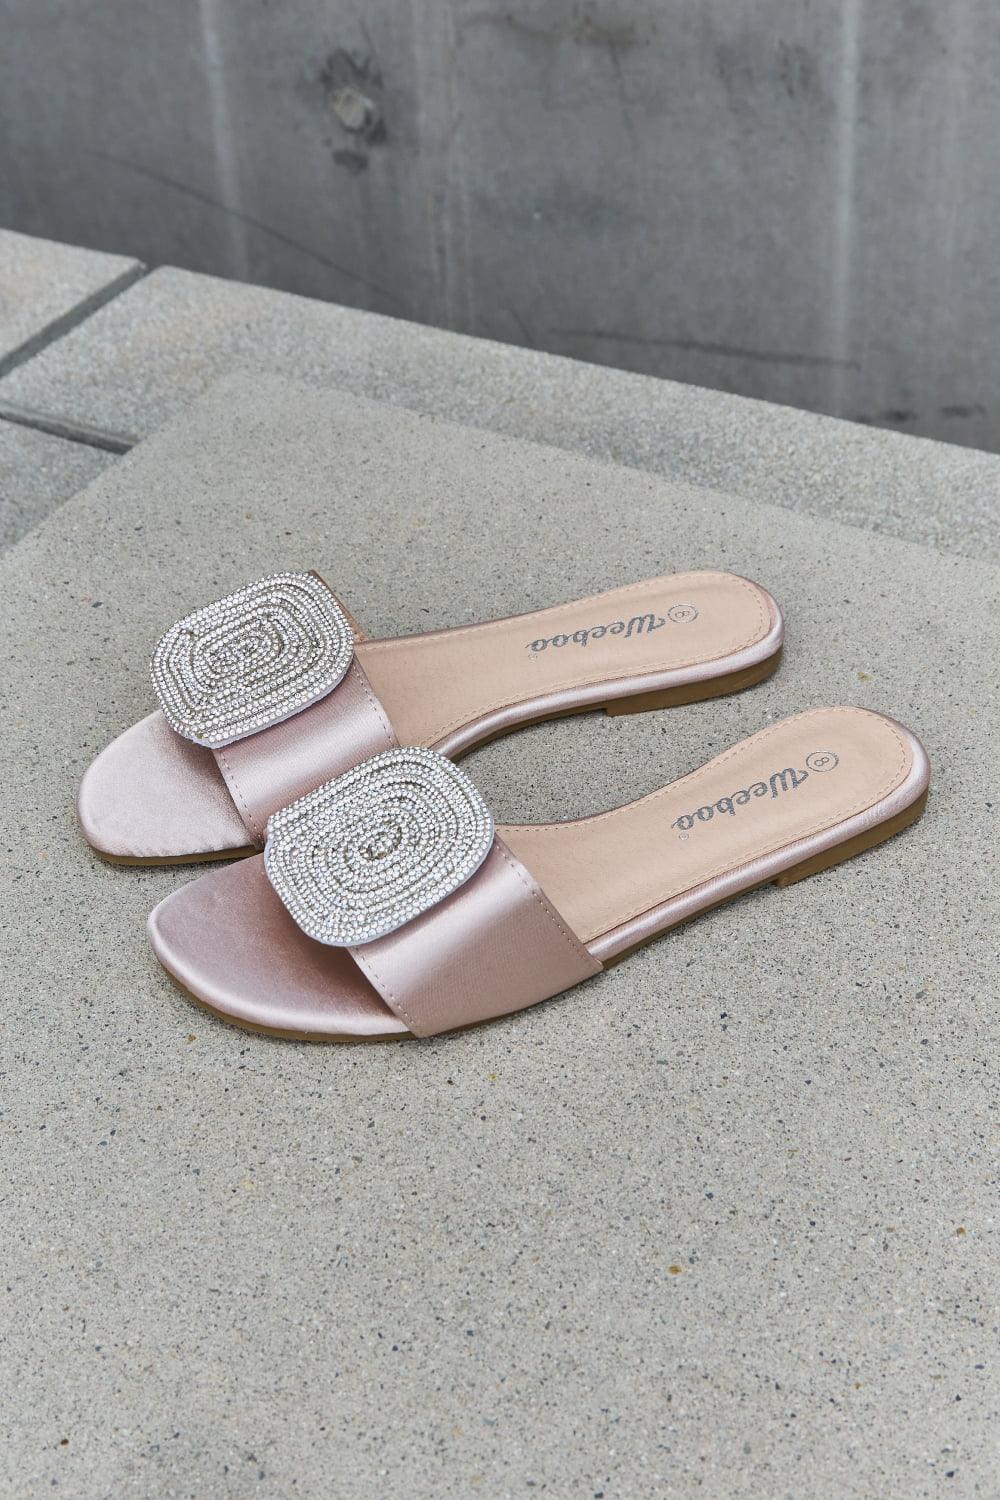 New Day Slide Sandal For Women - SAVLUXE